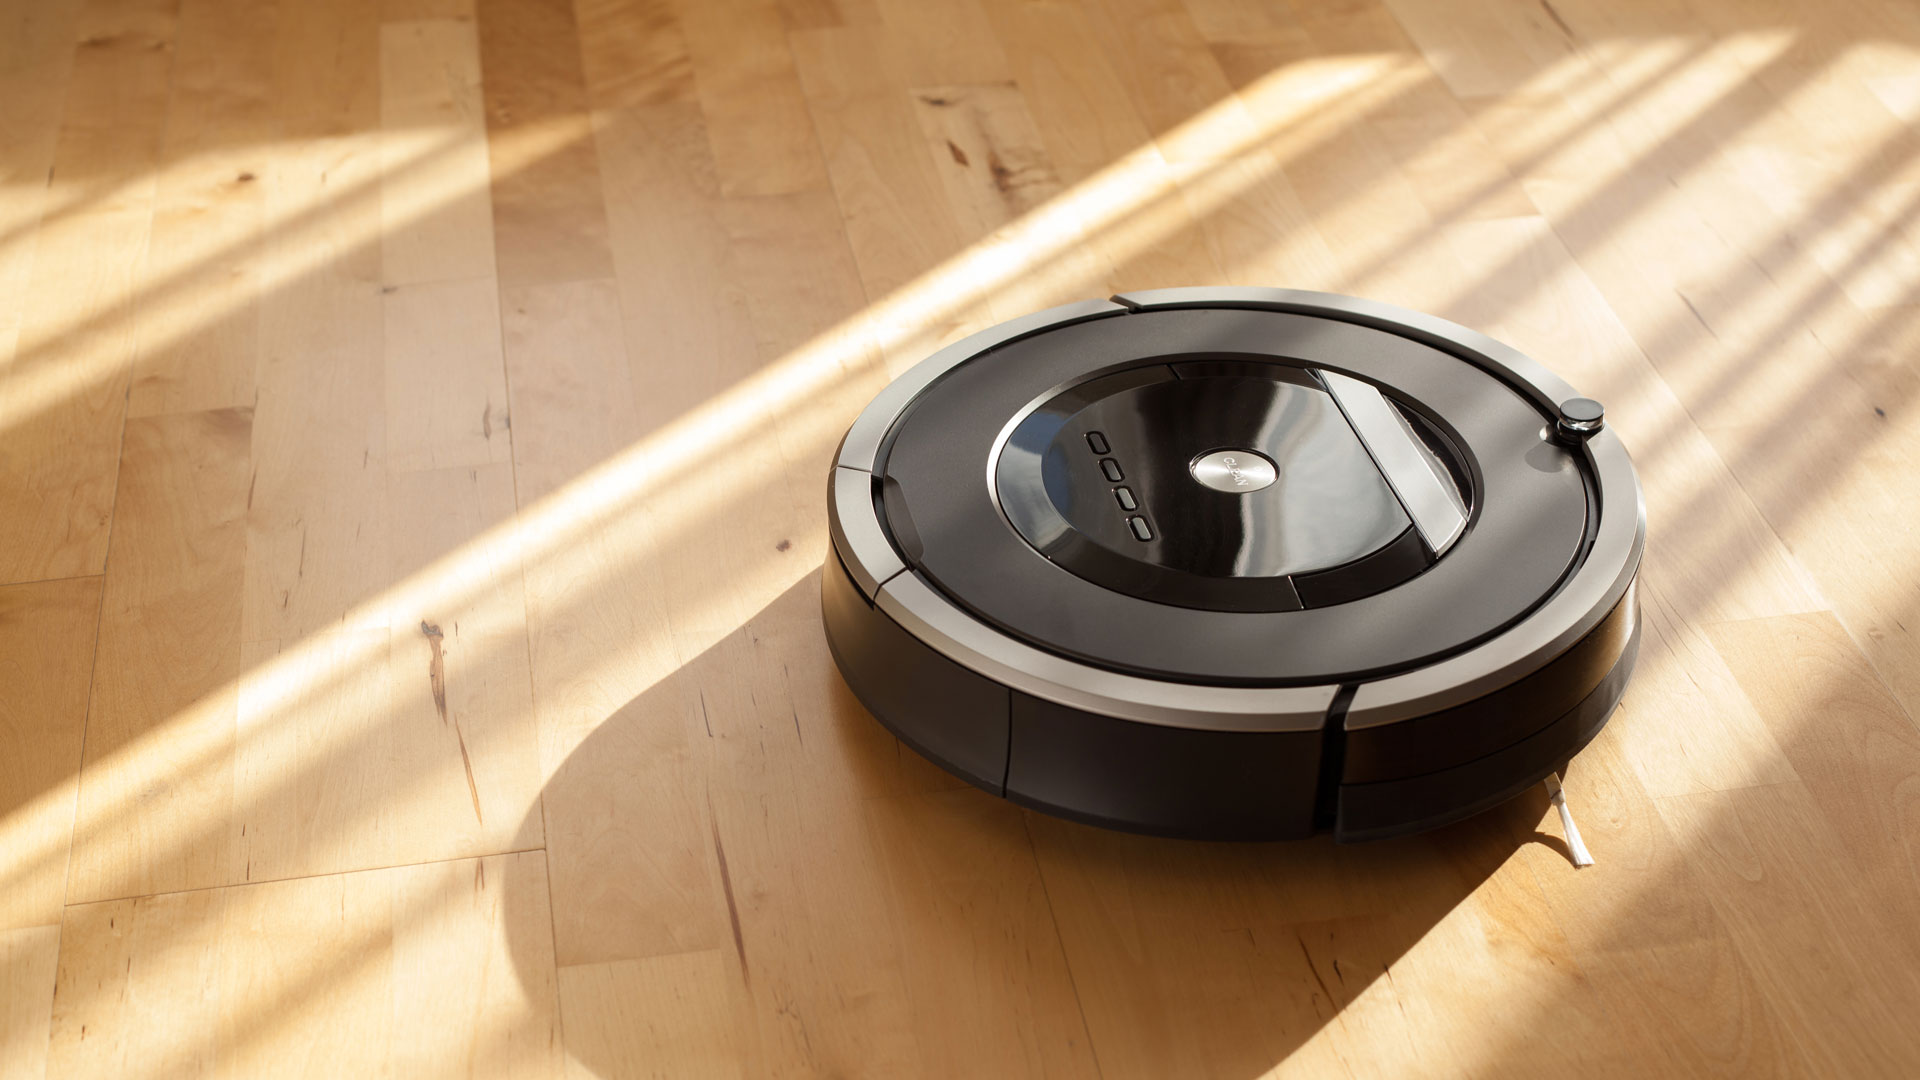 Best Robot Vacuums 2021 Top Ten Reviews, Best Robot Vacuum For Hardwood Floors